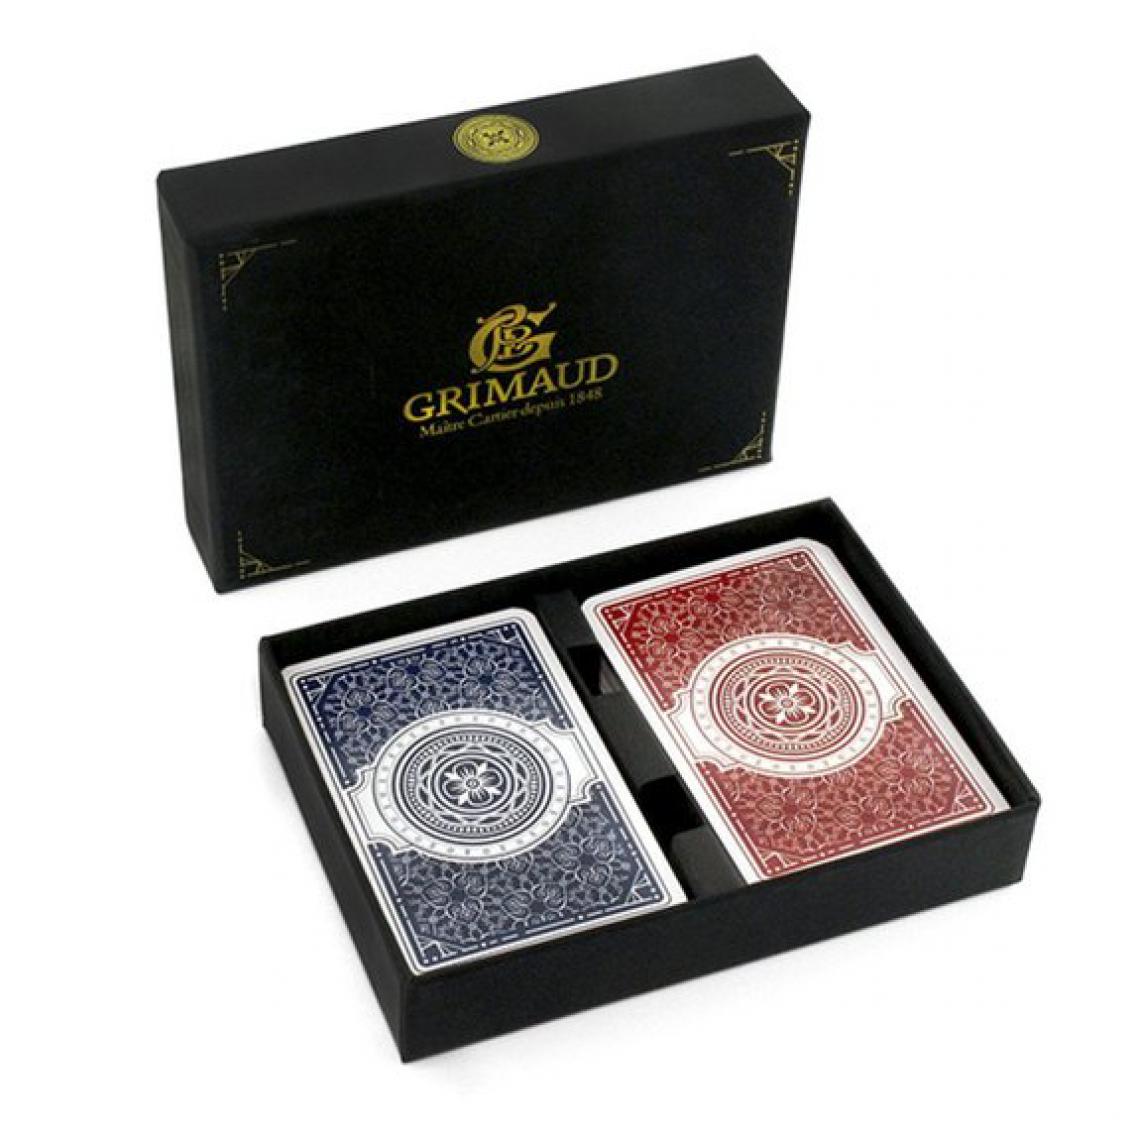 Ludendo - Coffret expert Grimaud 2 jeux de cartes de bridge - Carte à collectionner